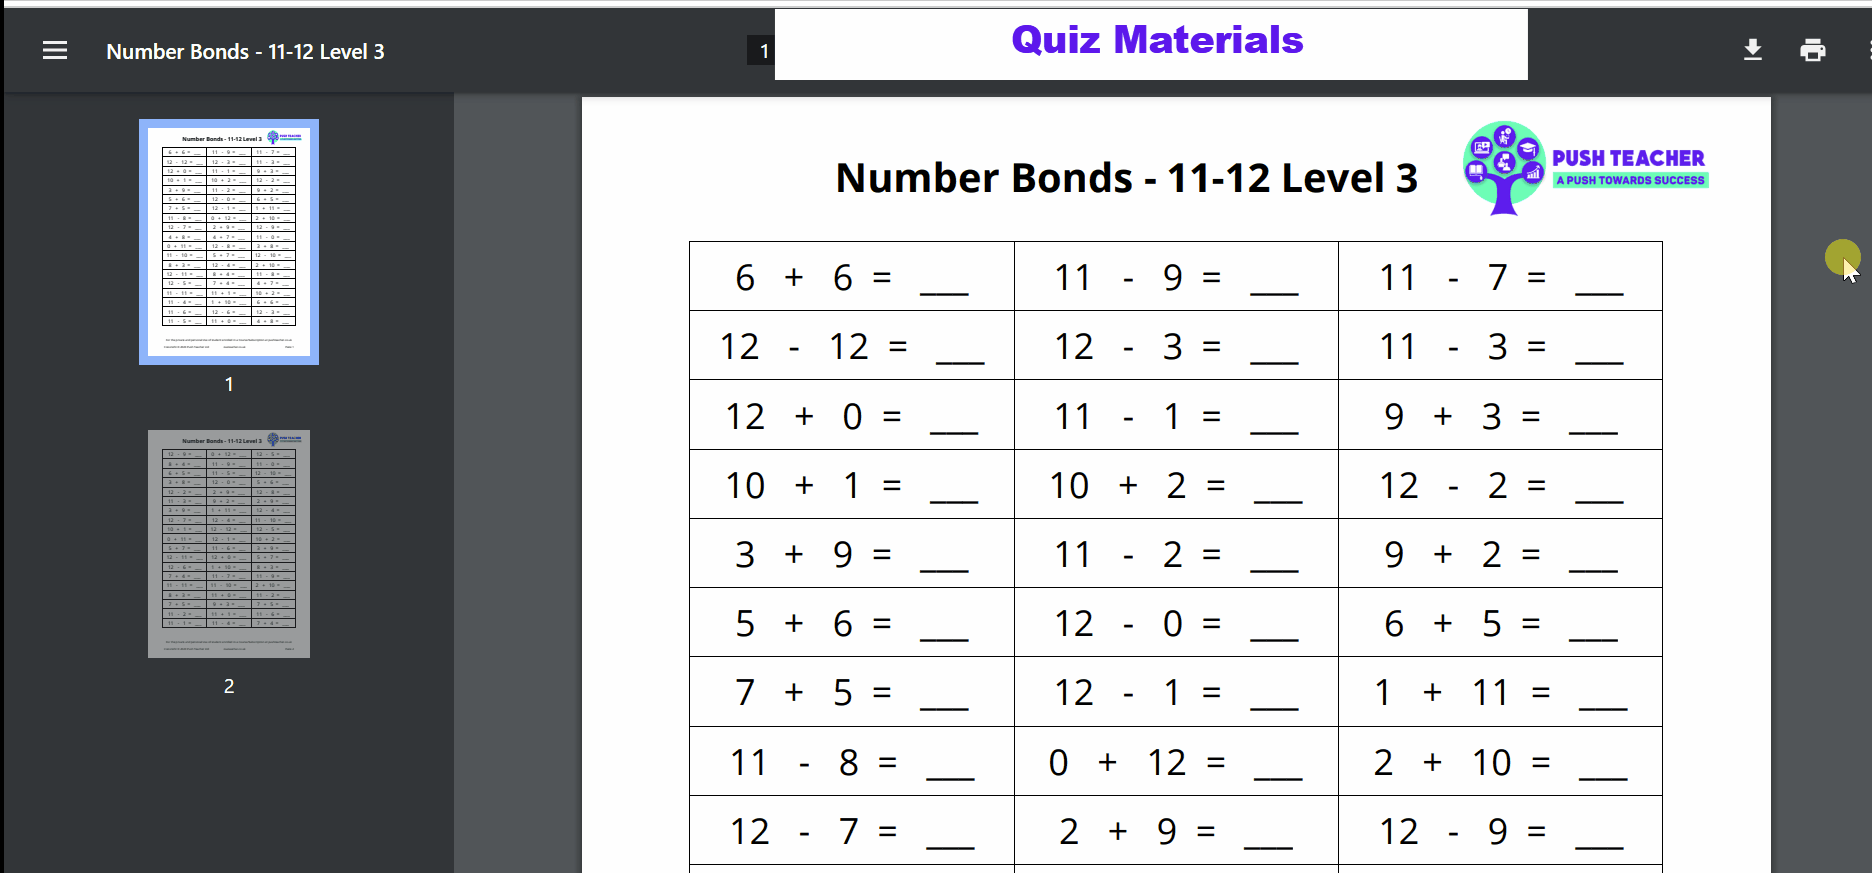 Quiz Materials